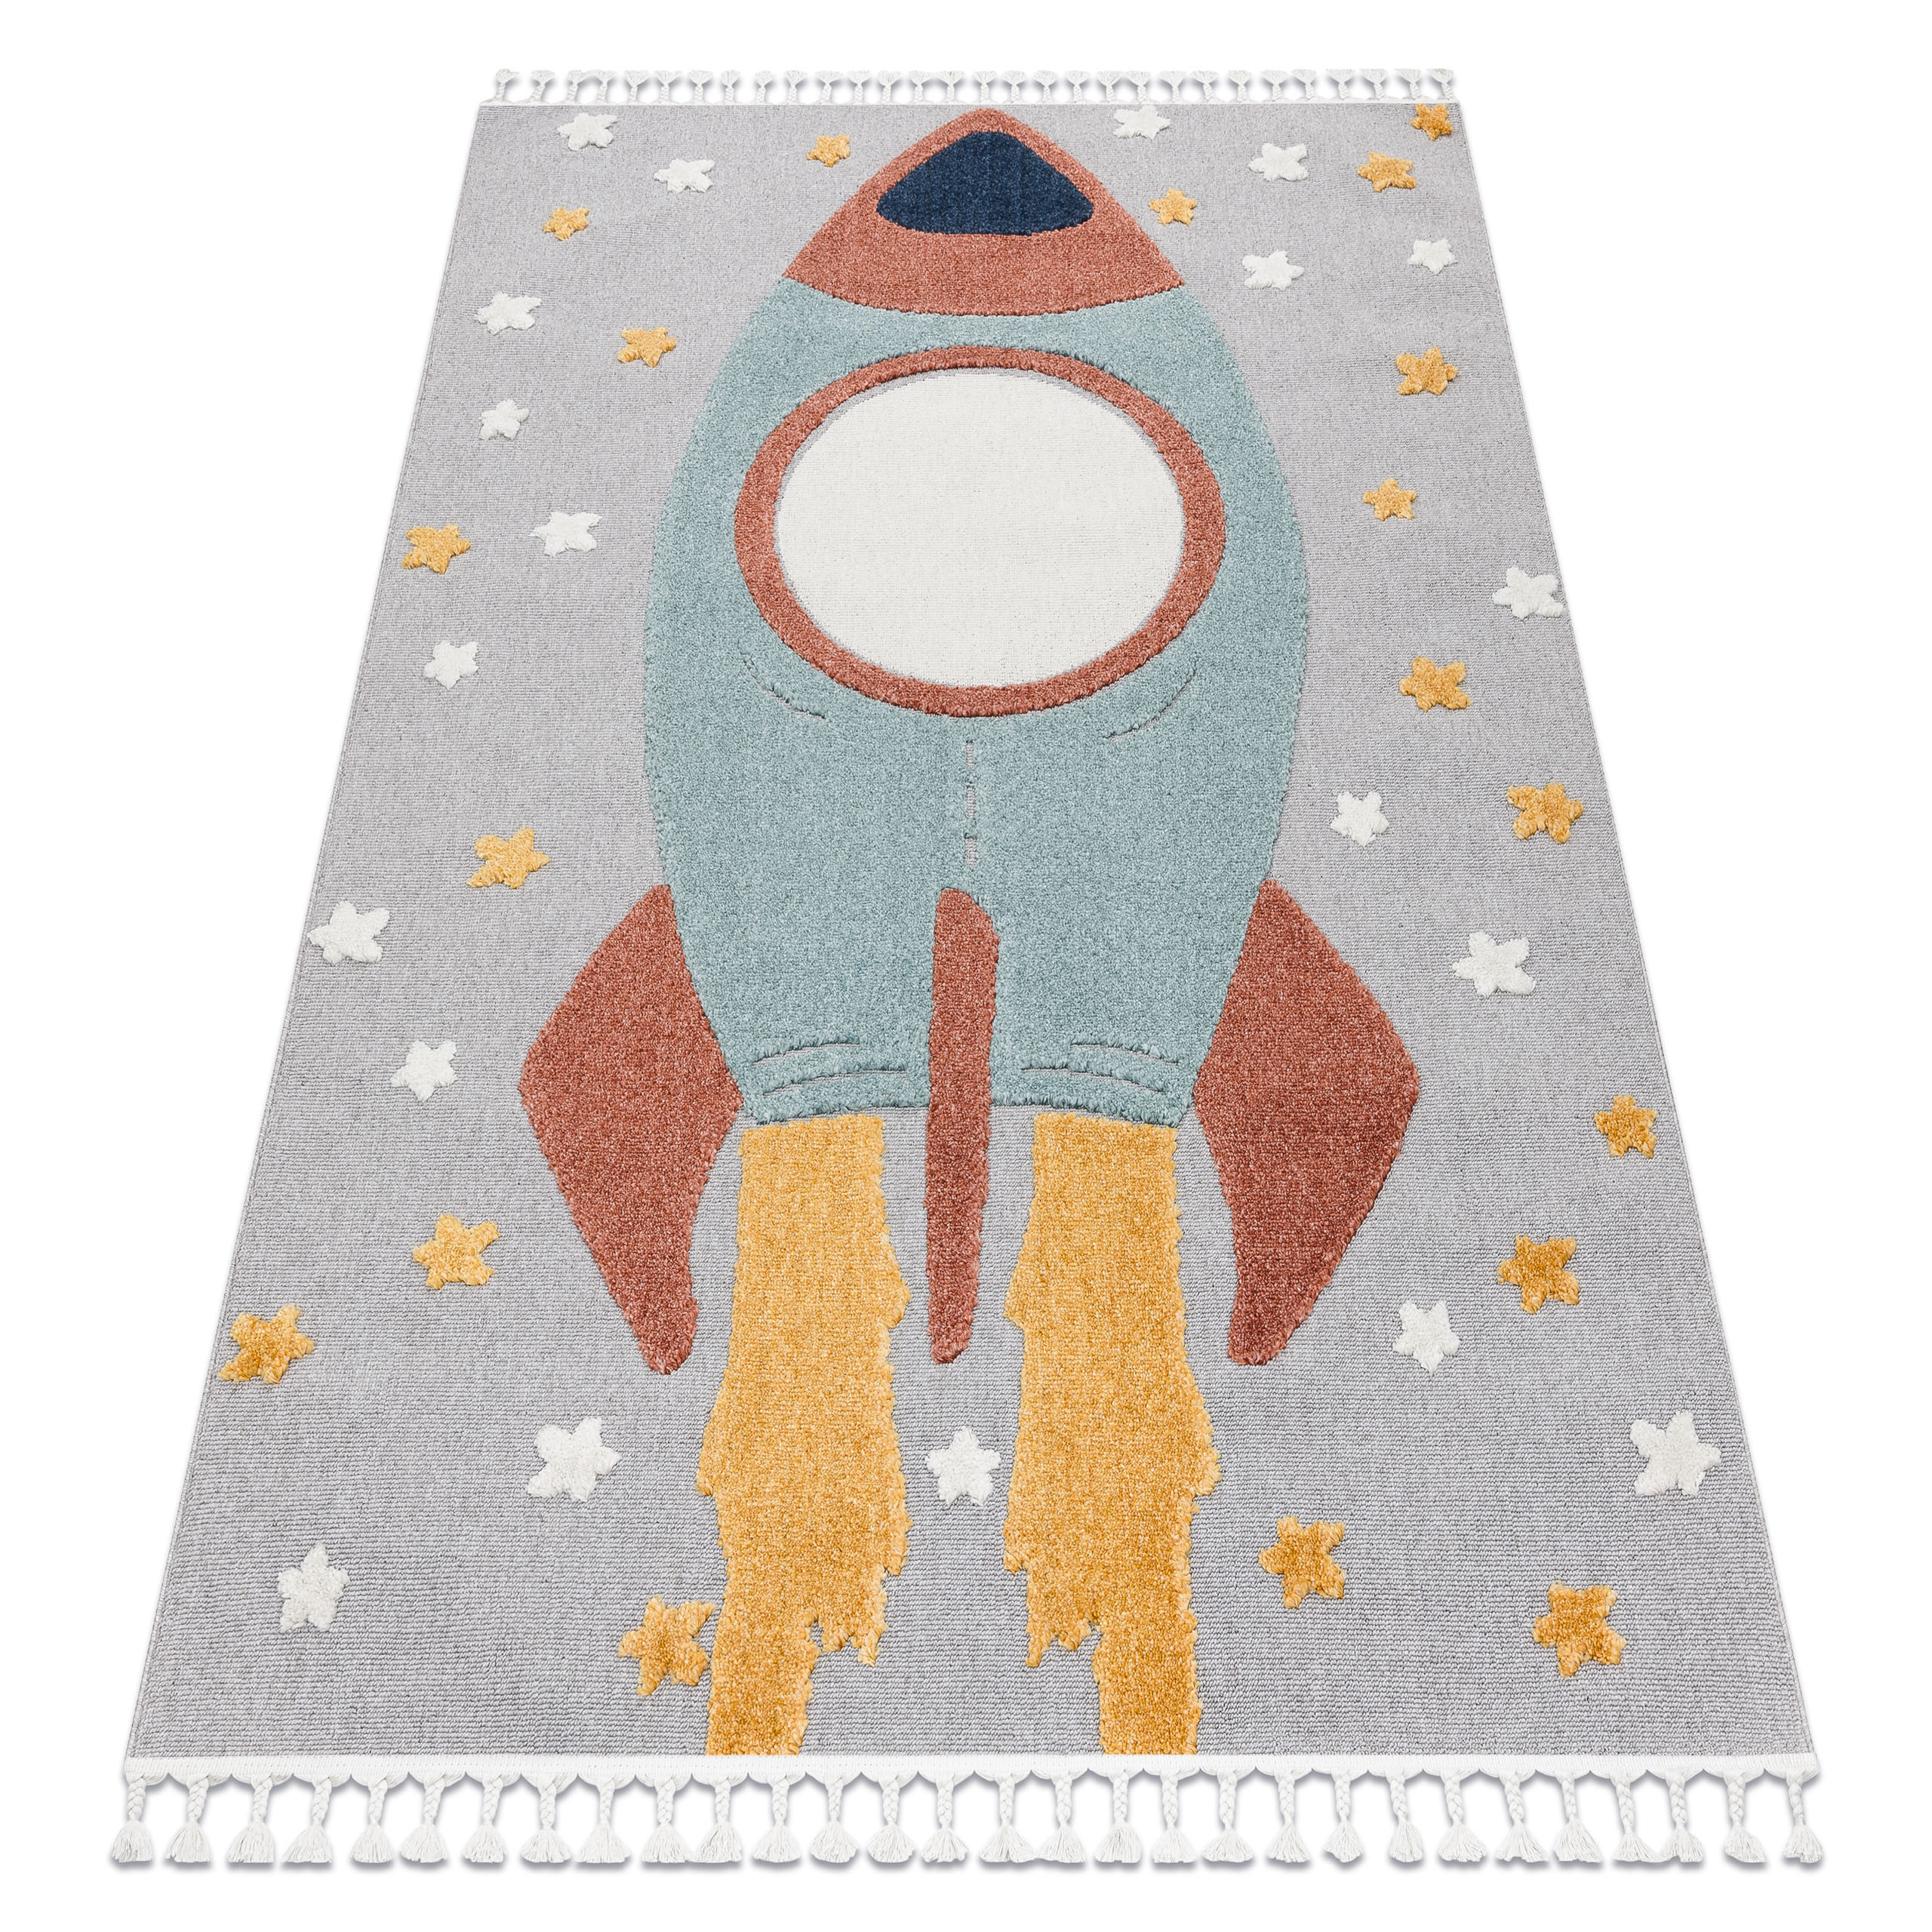 Detský koberec YOYO GD55 sivý / modrý, hviezdičky, raketa